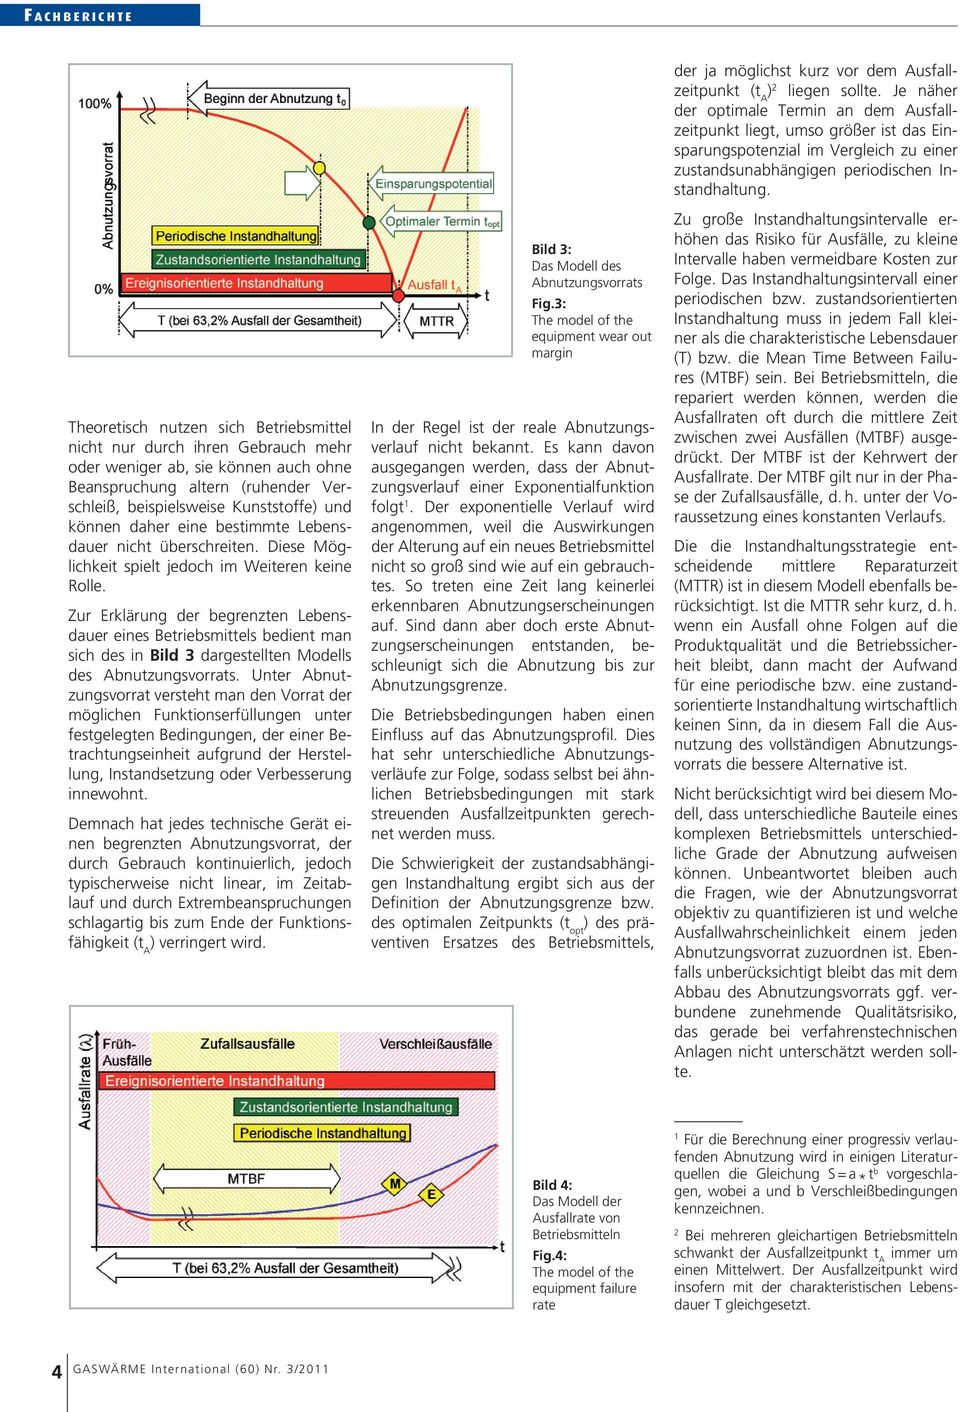 Zur Erklärung der begrenzten Lebensdauer eines Betriebsmittels bedient man sich des in Bild 3 dargestellten Modells des Abnutzungsvorrats.